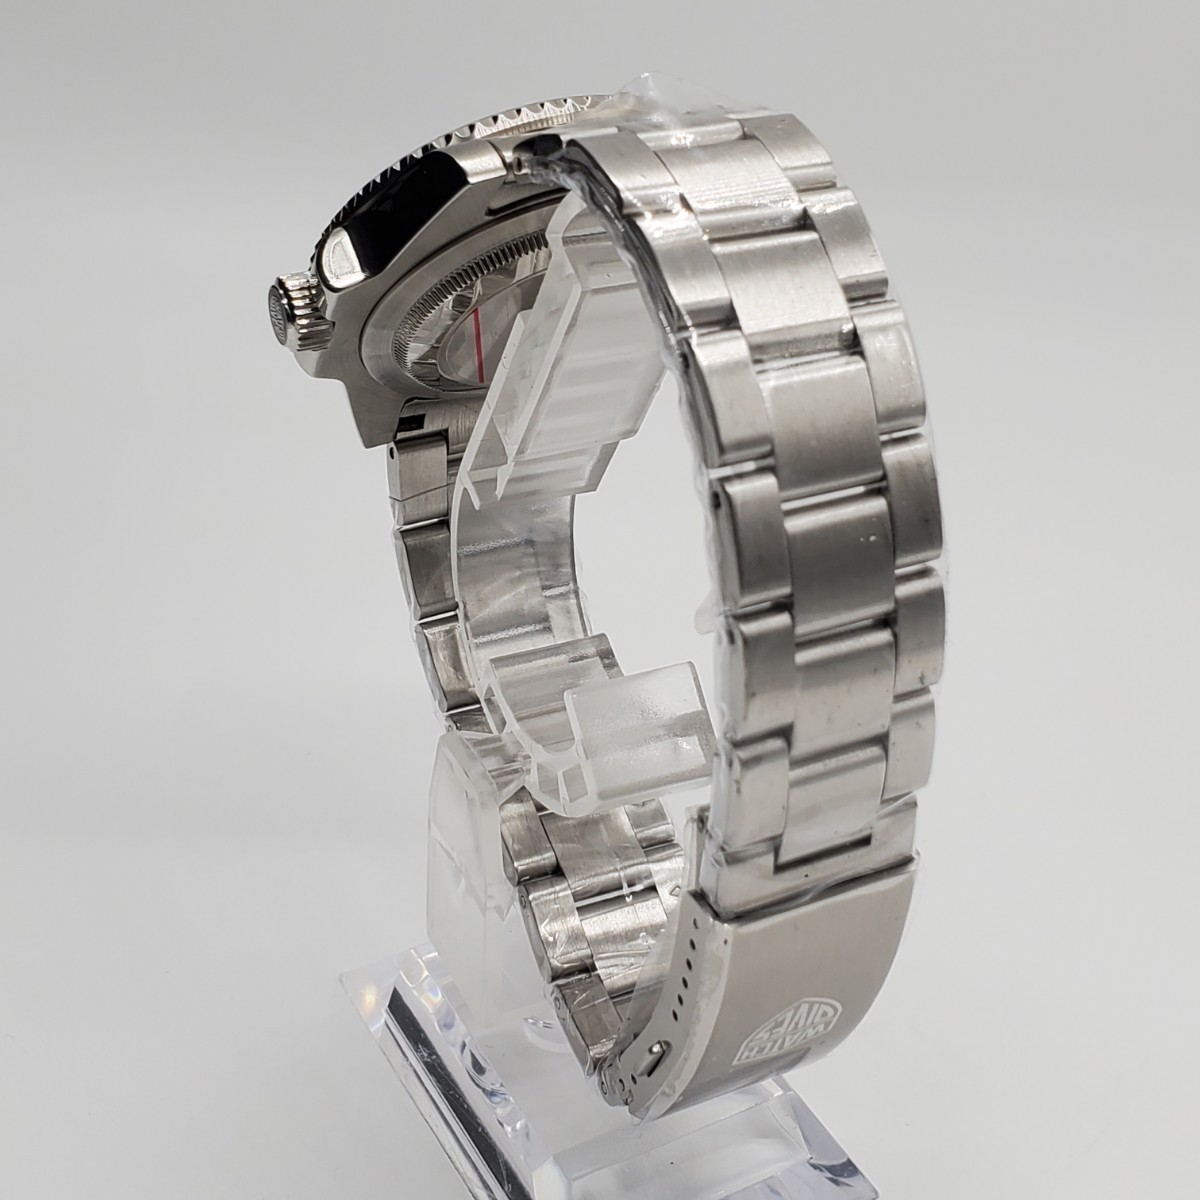  новый товар самозаводящиеся часы Watchdives Divers часы Vintage дизайн NH35 темно-синий мужские наручные часы автоматический вращение оправа 300m водонепроницаемый 